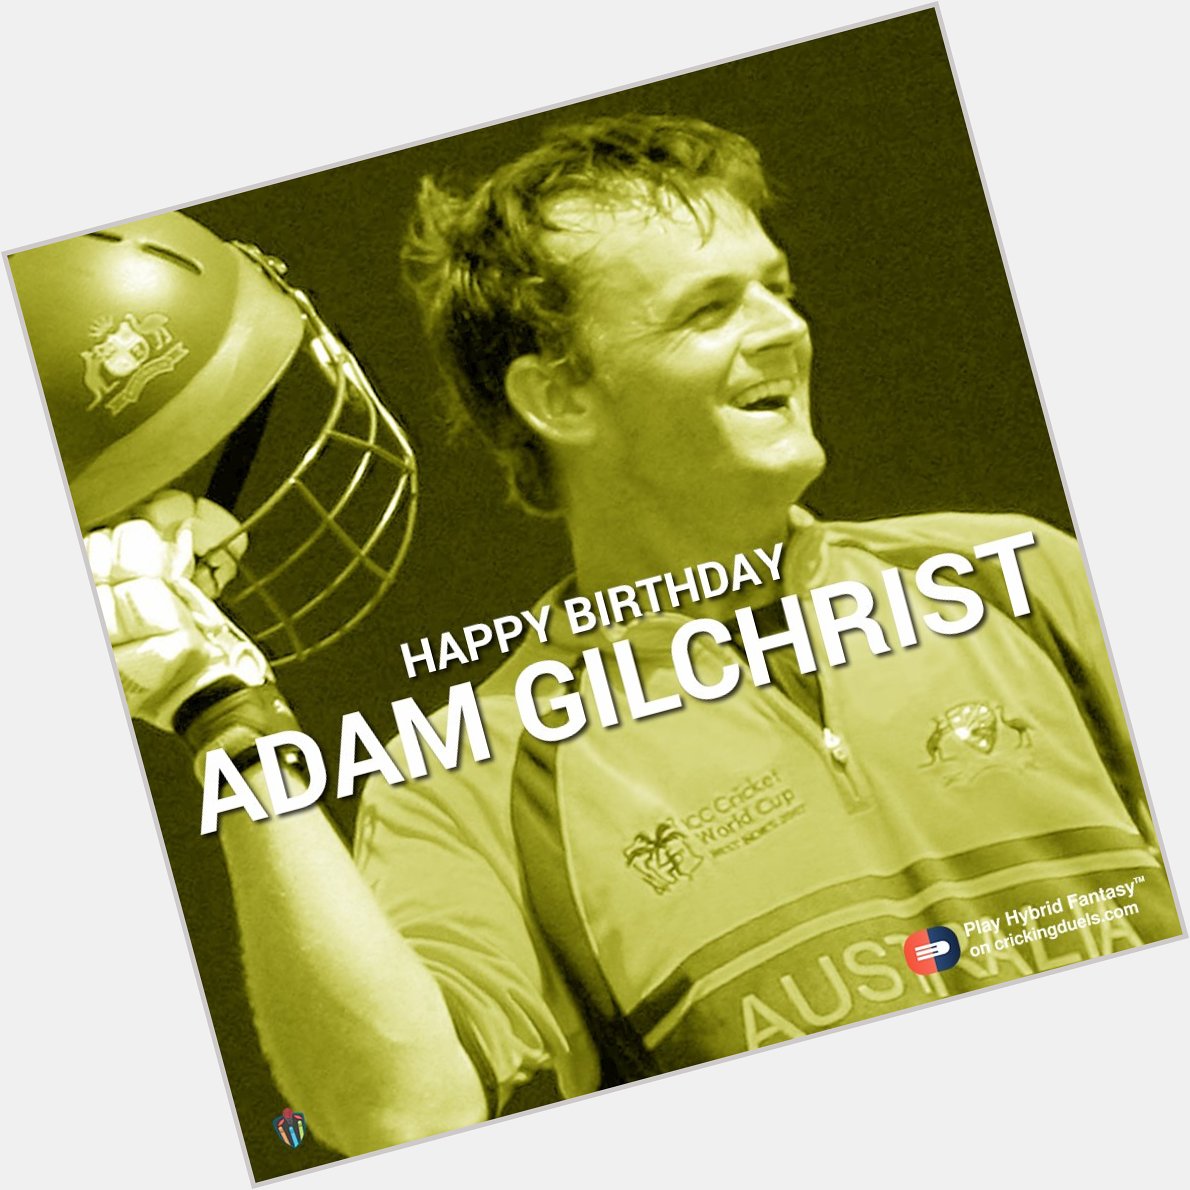 Happy birthday, Adam Gilchrist! 